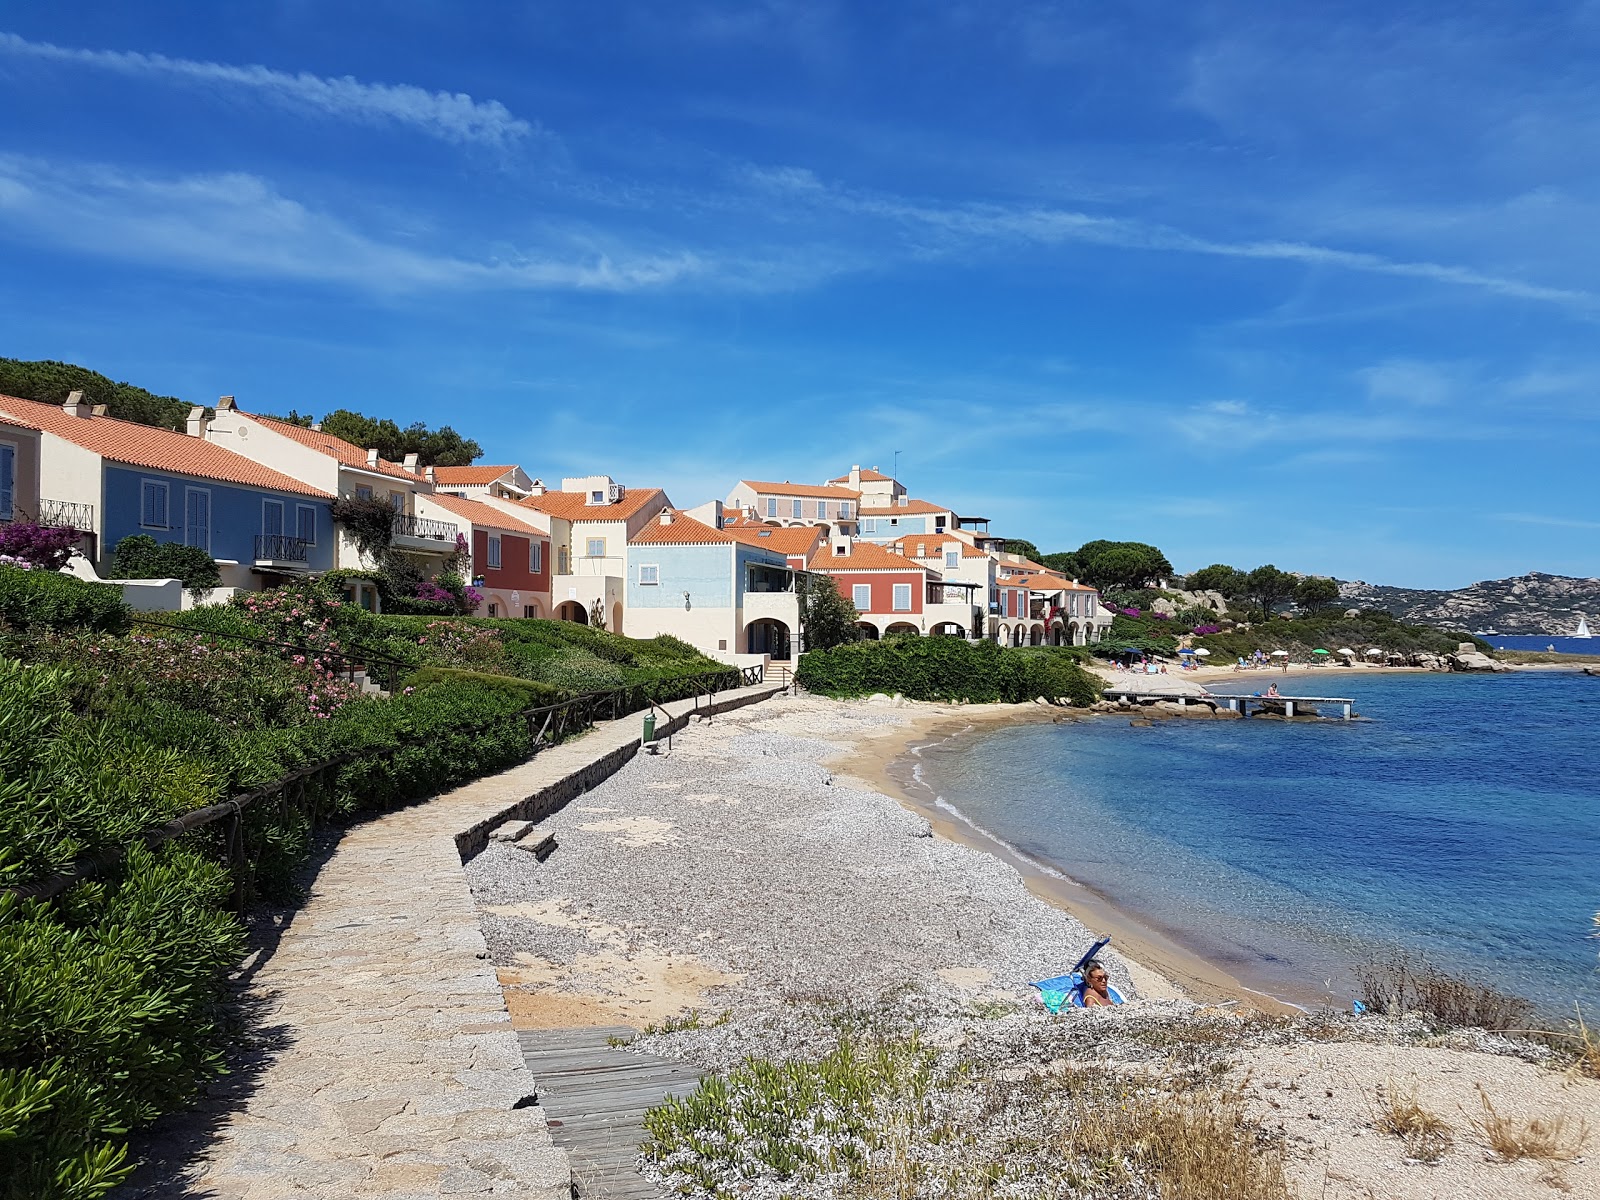 Foto de Spiaggia Porto Faro com alto nível de limpeza